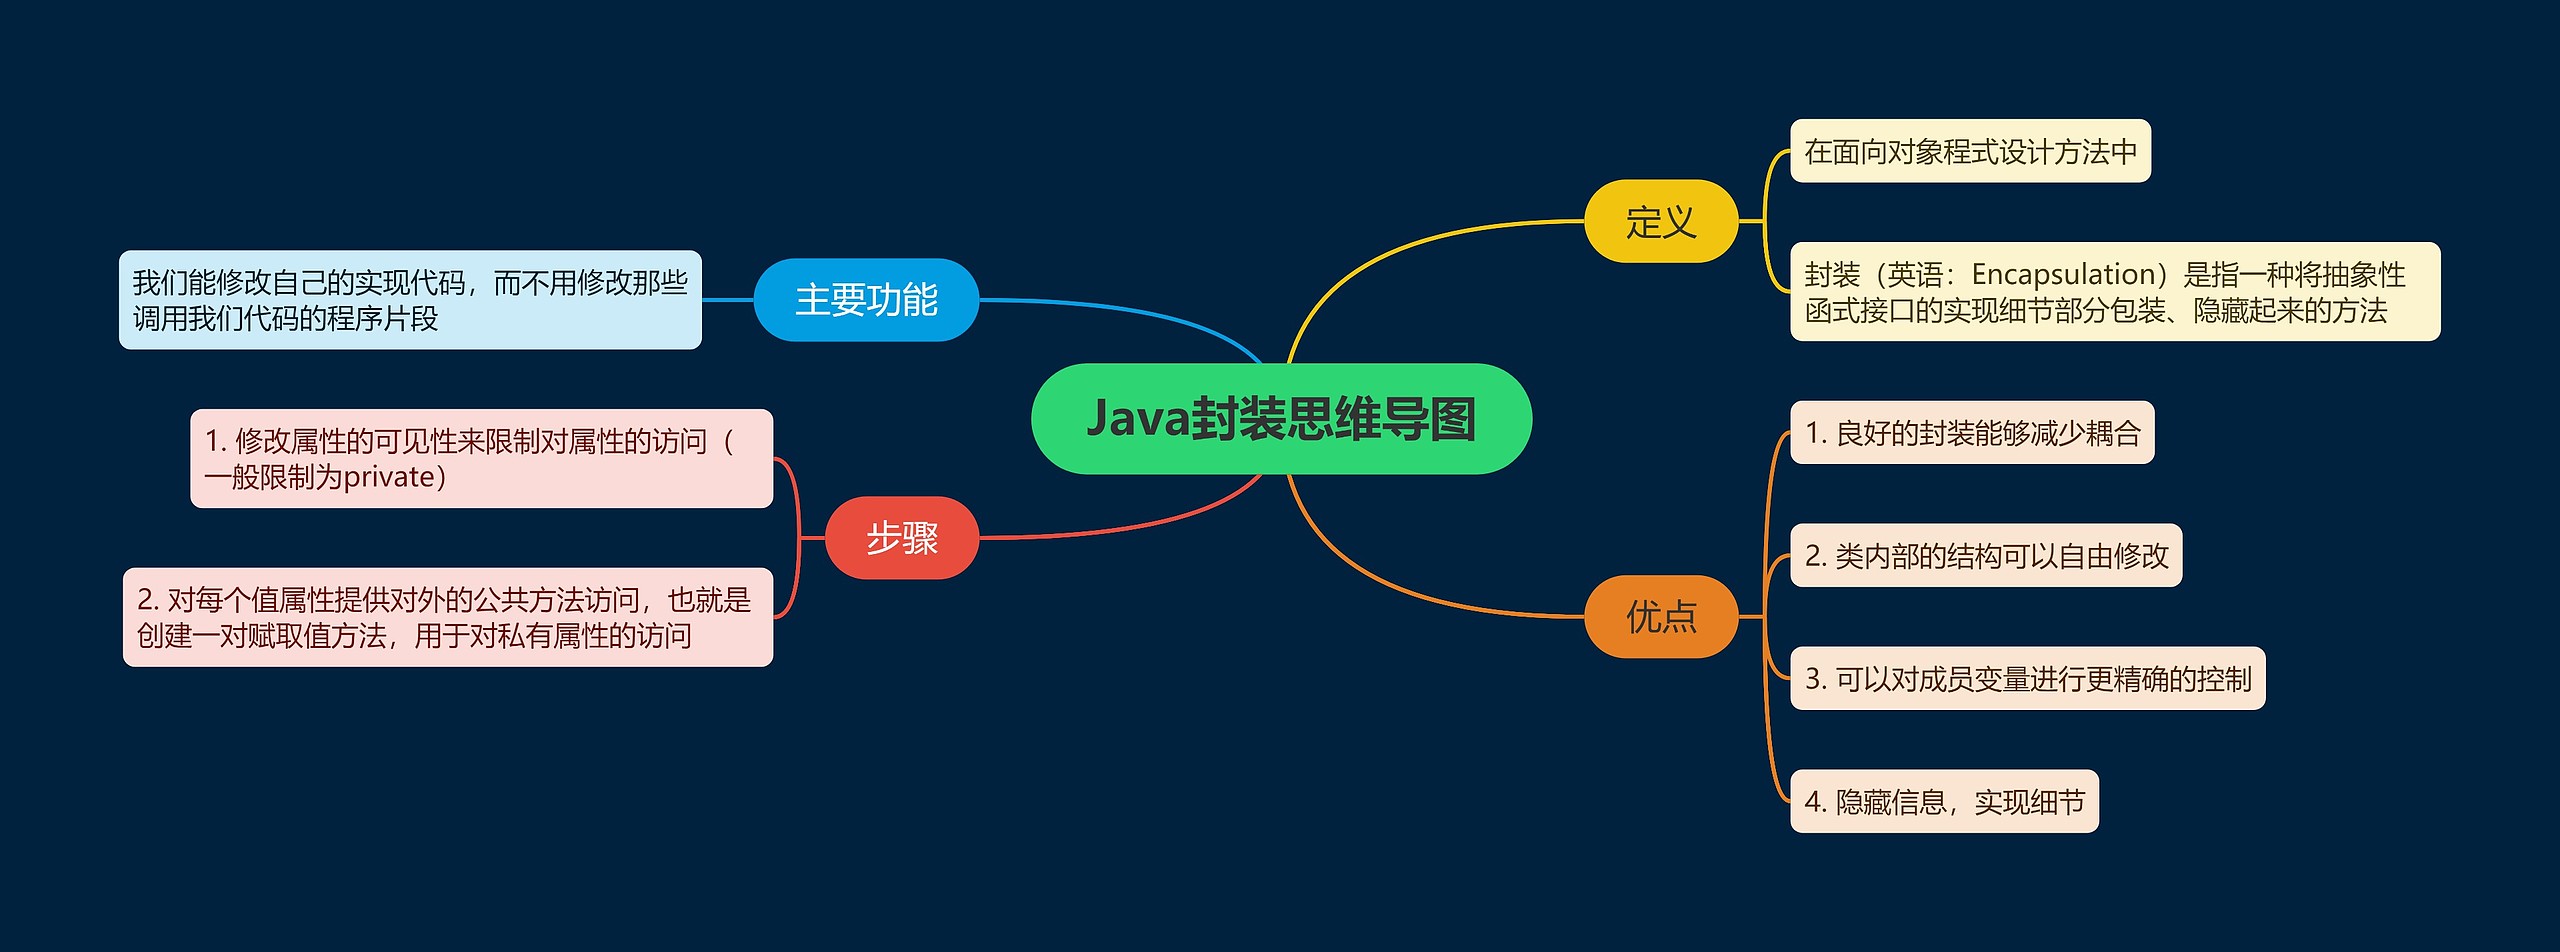 Java封装思维导图